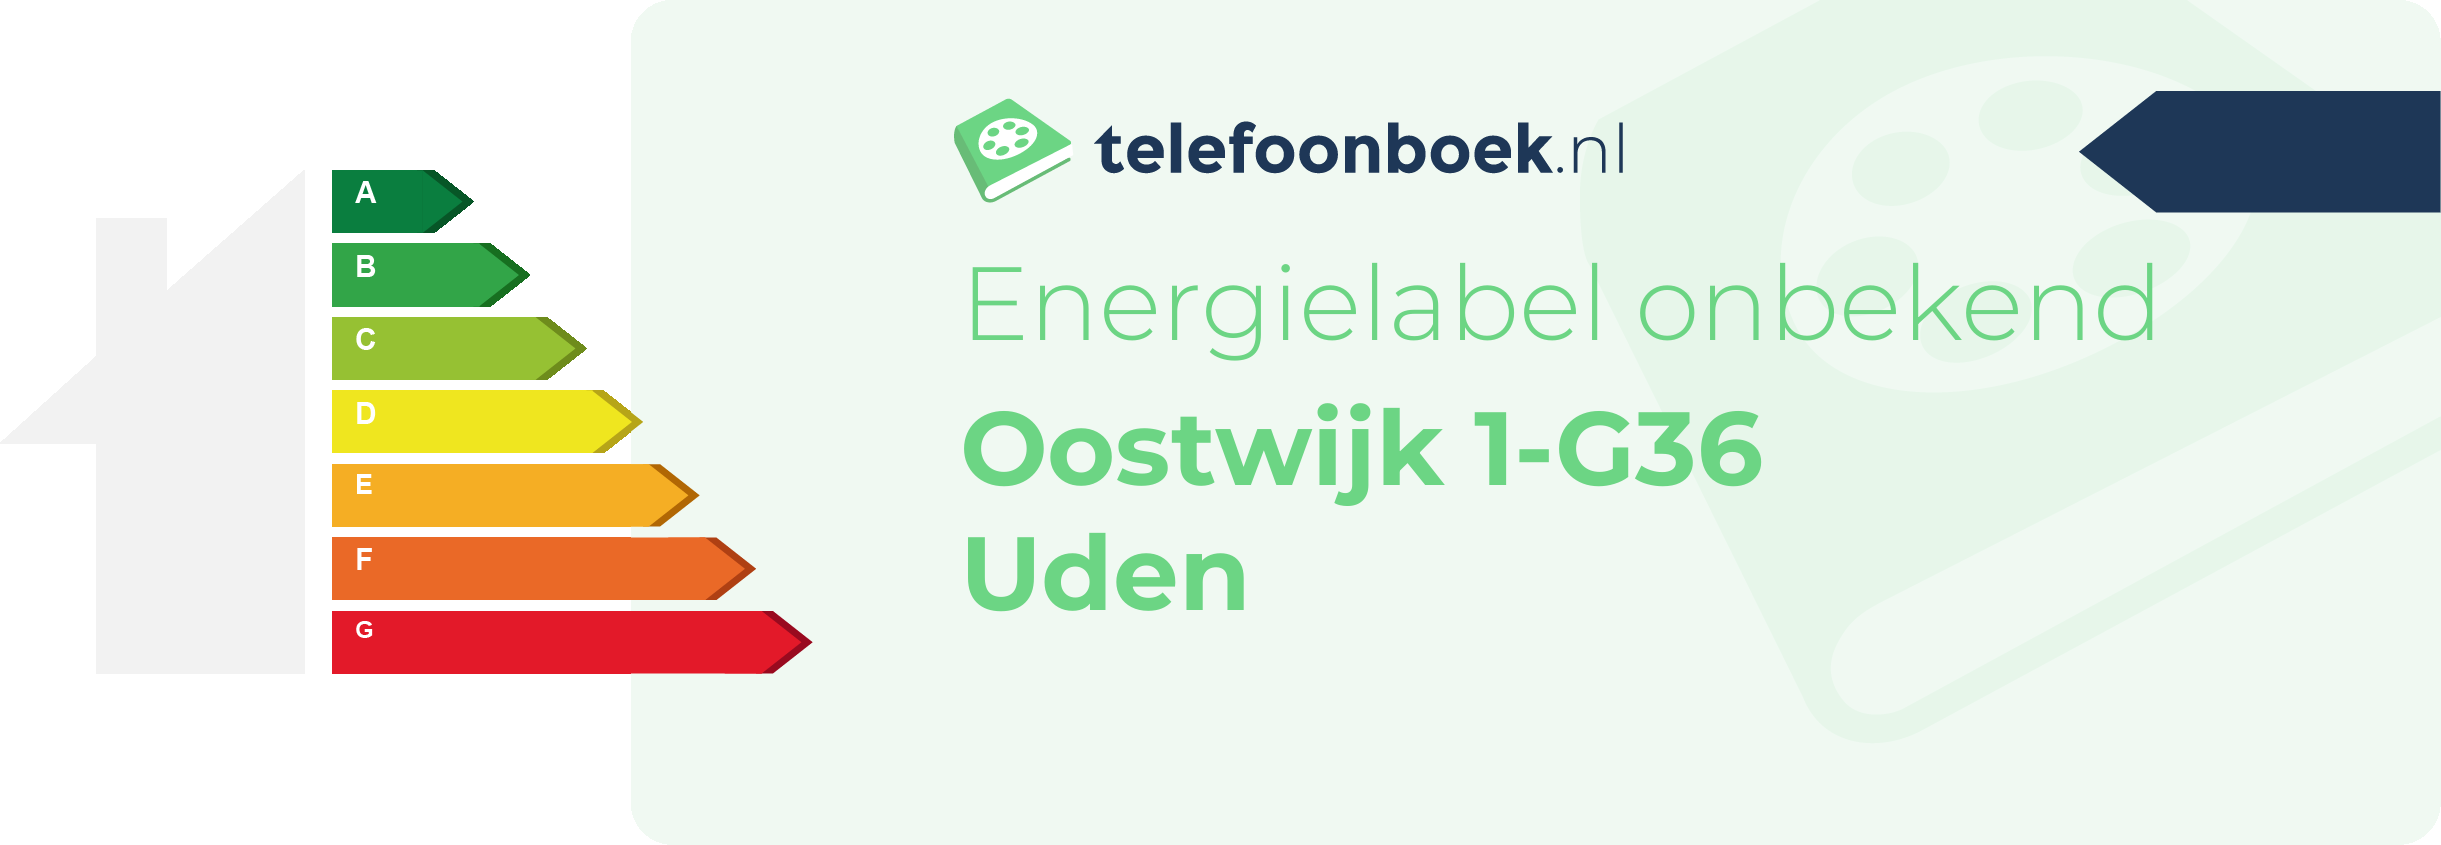 Energielabel Oostwijk 1-G36 Uden